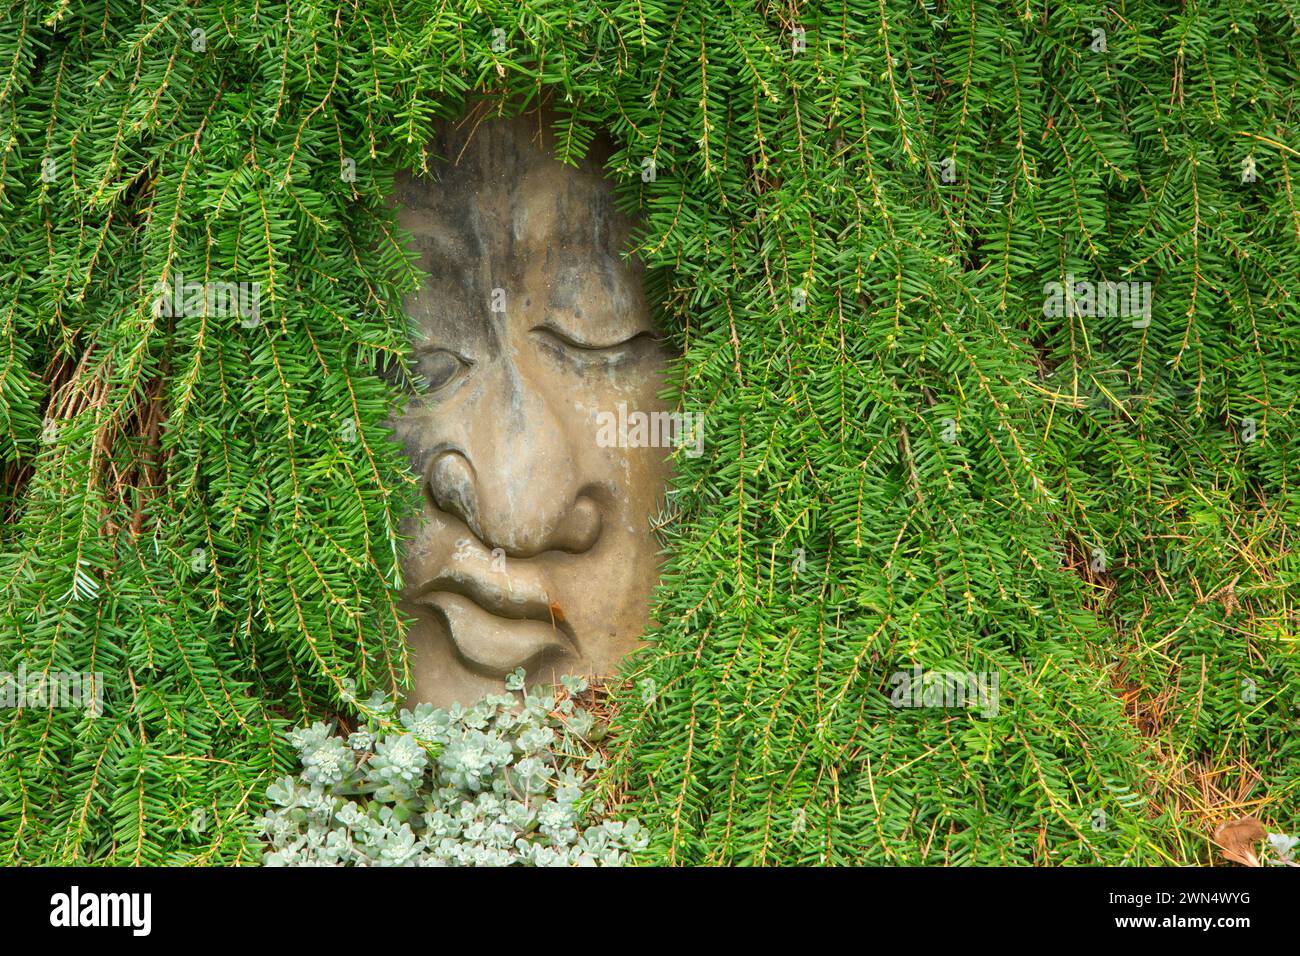 Garden face sculpture, Oregon Garden, Silverton, Oregon Stock Photo